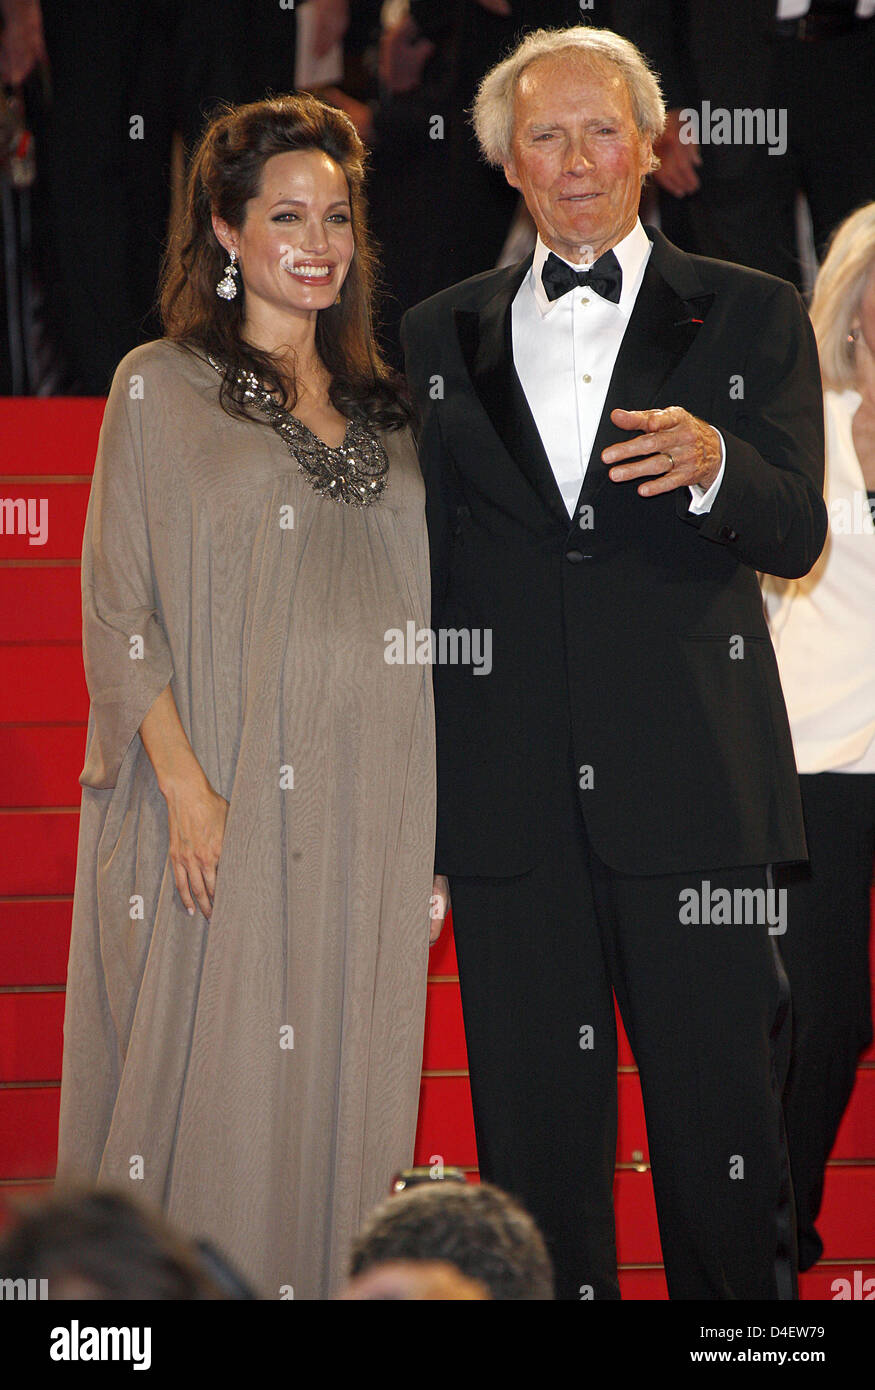 US-Schauspielerin Angelina Jolie und Regisseur Clint Eastwood lassen die Premiere von "The Exchange" Palais des Festivals bei den 61. Filmfestspielen in Cannes, Frankreich, 20. Mai 2008. Foto: Hubert Boesl Stockfoto